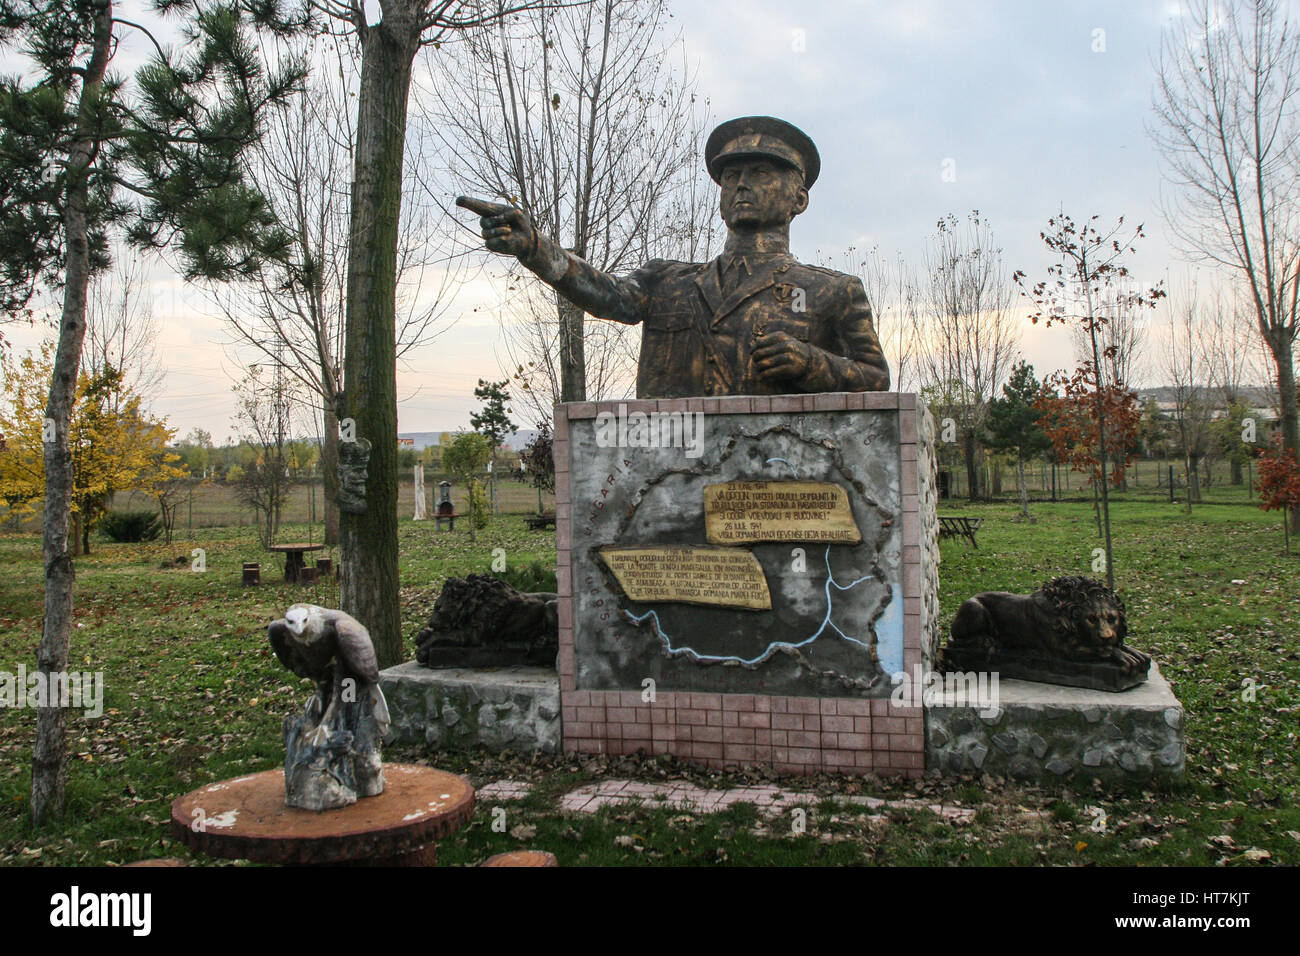 Craiova, Rumänien, 8. November 2009: Eine Statue von Marschall Ion Antonescu wird im Museum der rumänischen Sozialistischen Republik in Craiova gesehen. Stockfoto